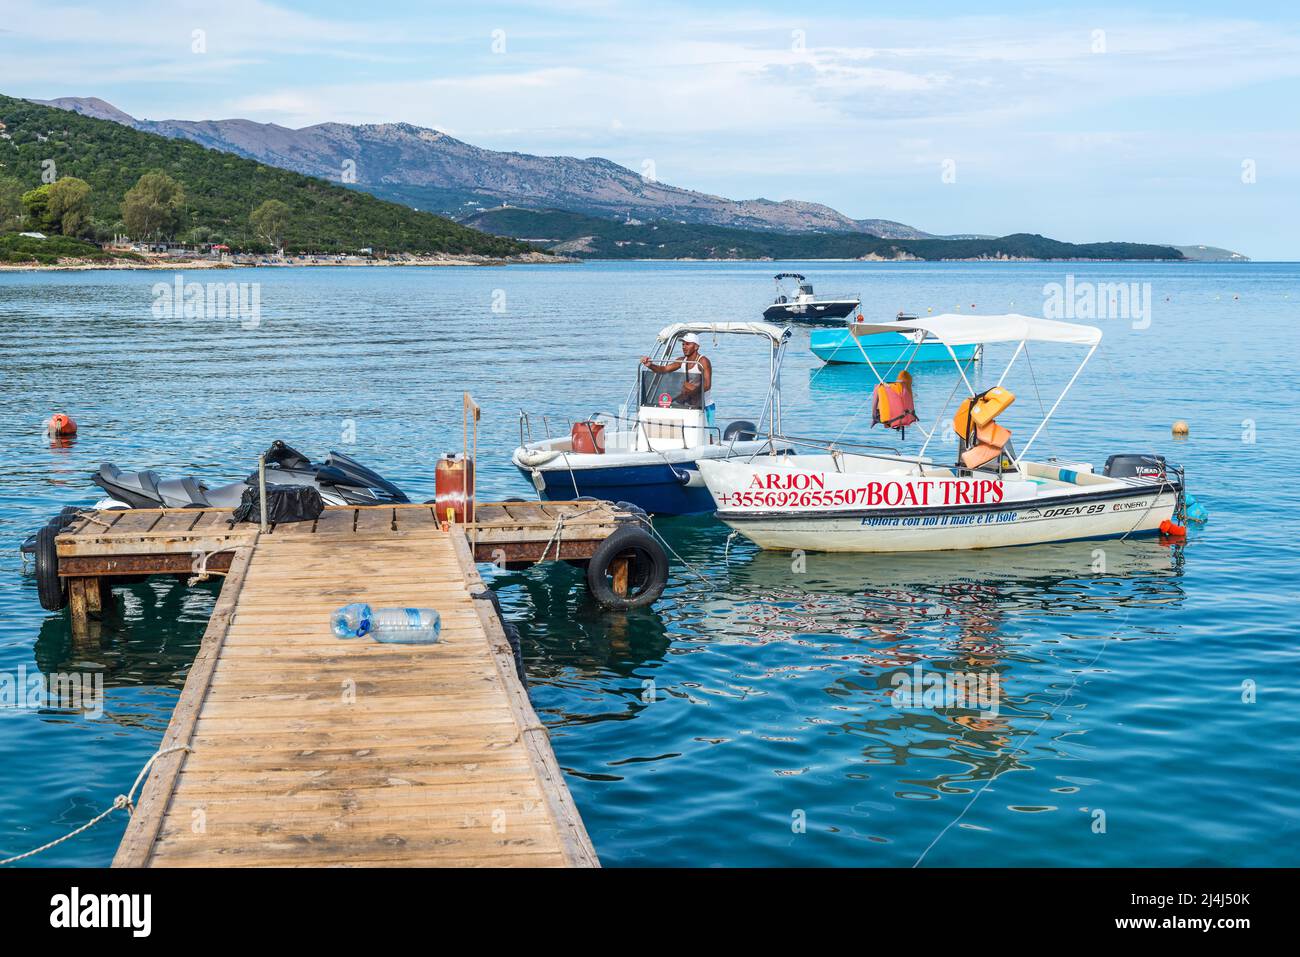 Ksamil, Albania - 9 de septiembre de 2021: Muelle de madera y barcos en la playa paraíso Ksamil en Albania. Azure mañana paisaje marino de mar Jónico. Concepto de vacaciones Foto de stock